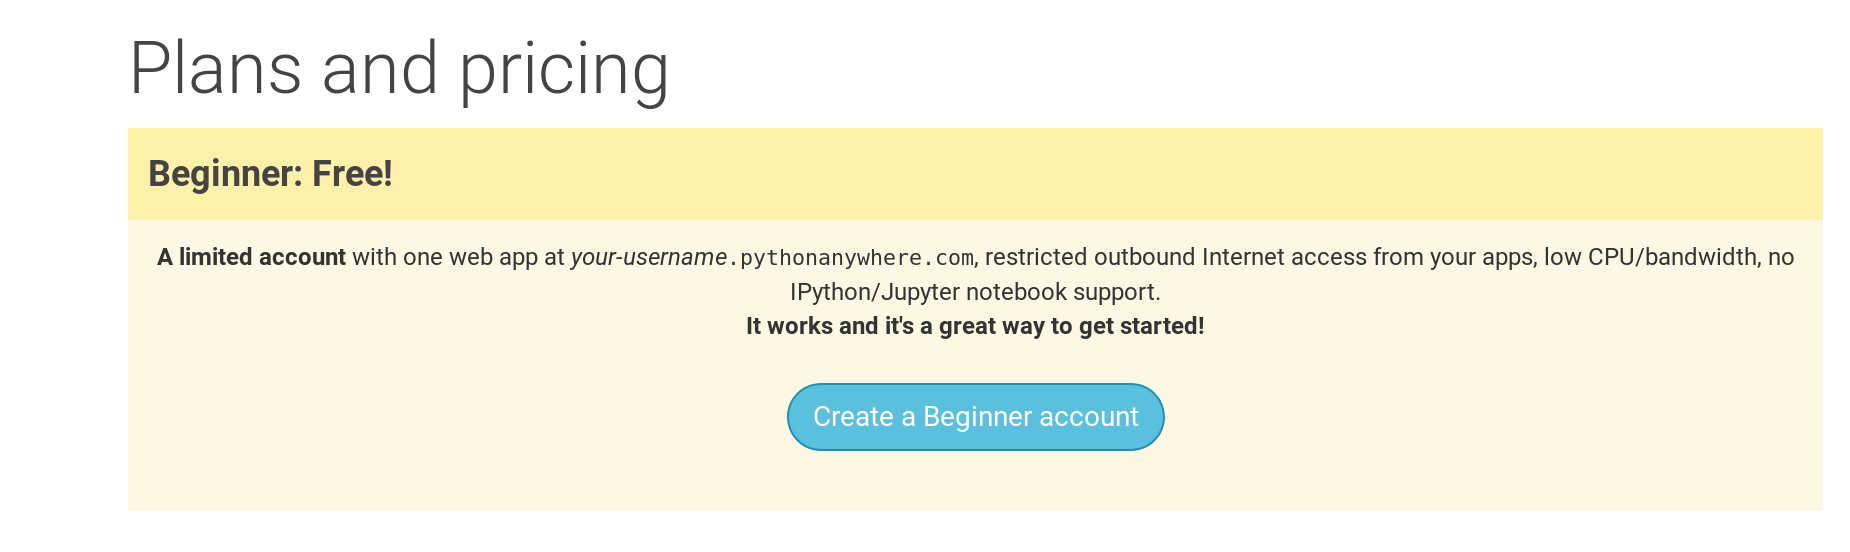 Страница регистрации на PythonAnywhere с кнопкой создания бесплатного 'Beginner' аккаунта